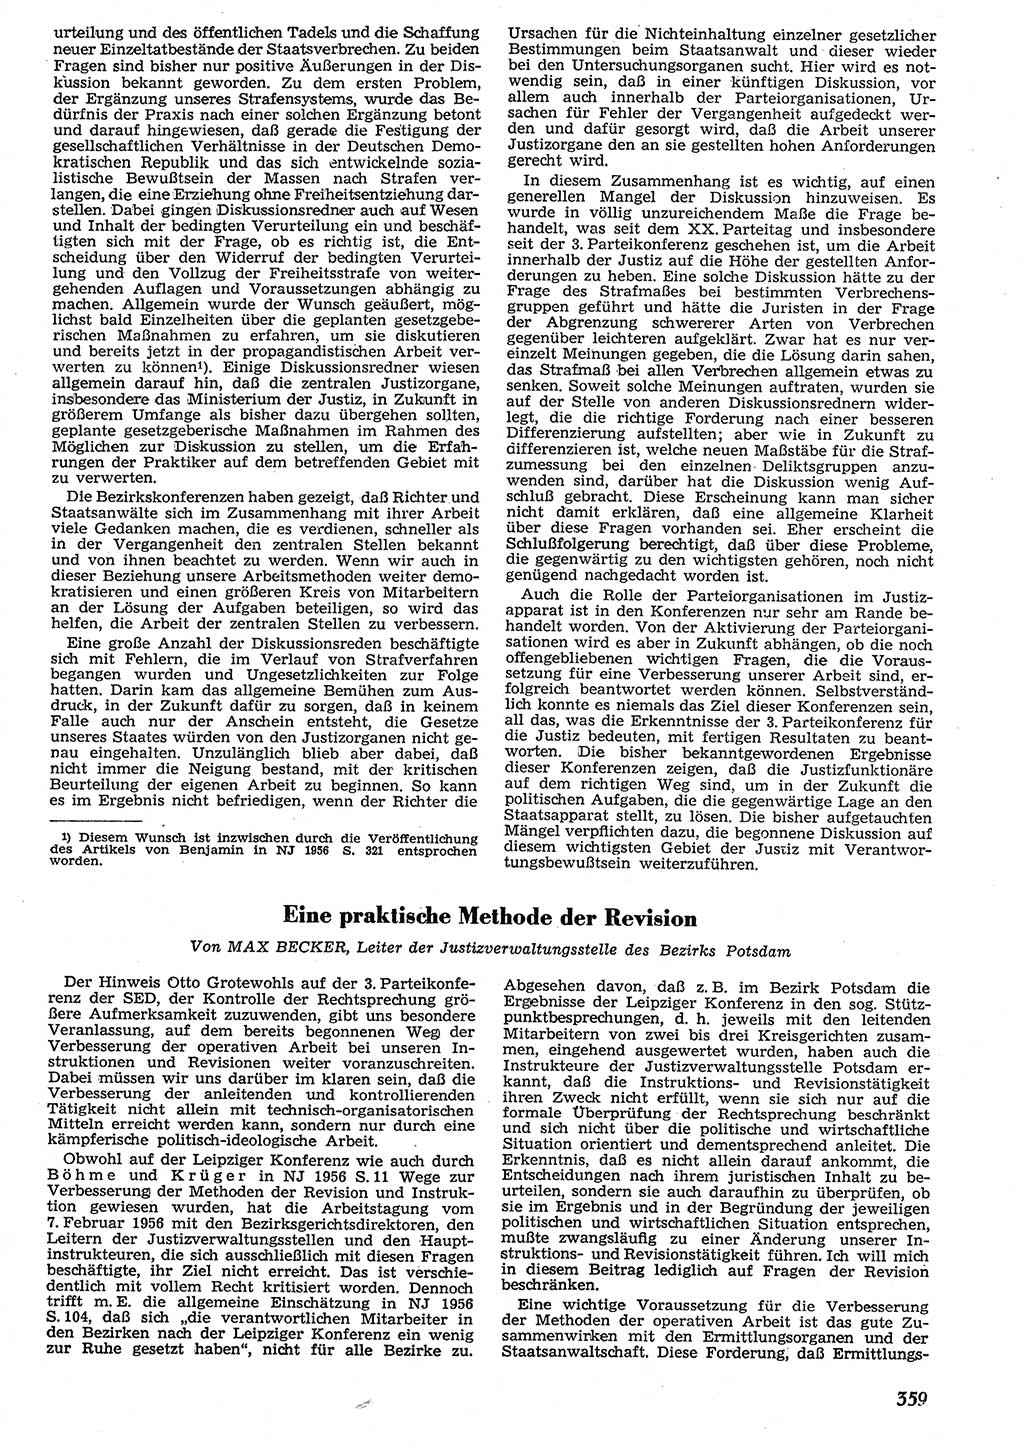 Neue Justiz (NJ), Zeitschrift für Recht und Rechtswissenschaft [Deutsche Demokratische Republik (DDR)], 10. Jahrgang 1956, Seite 359 (NJ DDR 1956, S. 359)